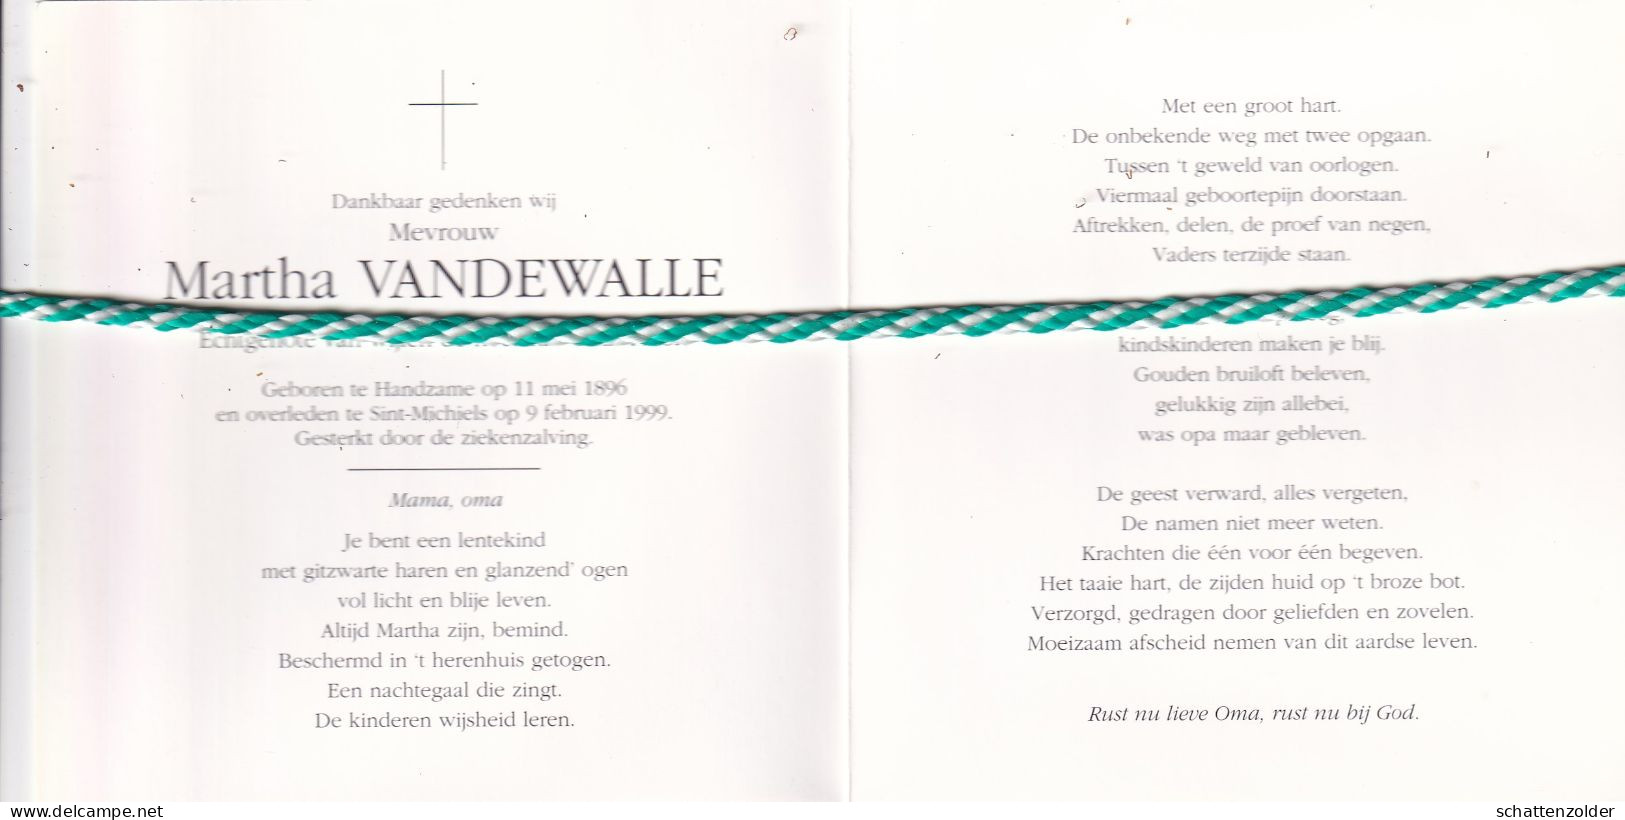 Martha Vandewalle-Gellynck, Handzame 1896, Sint-Michiels 1999. Honderdjarige. Foto - Obituary Notices